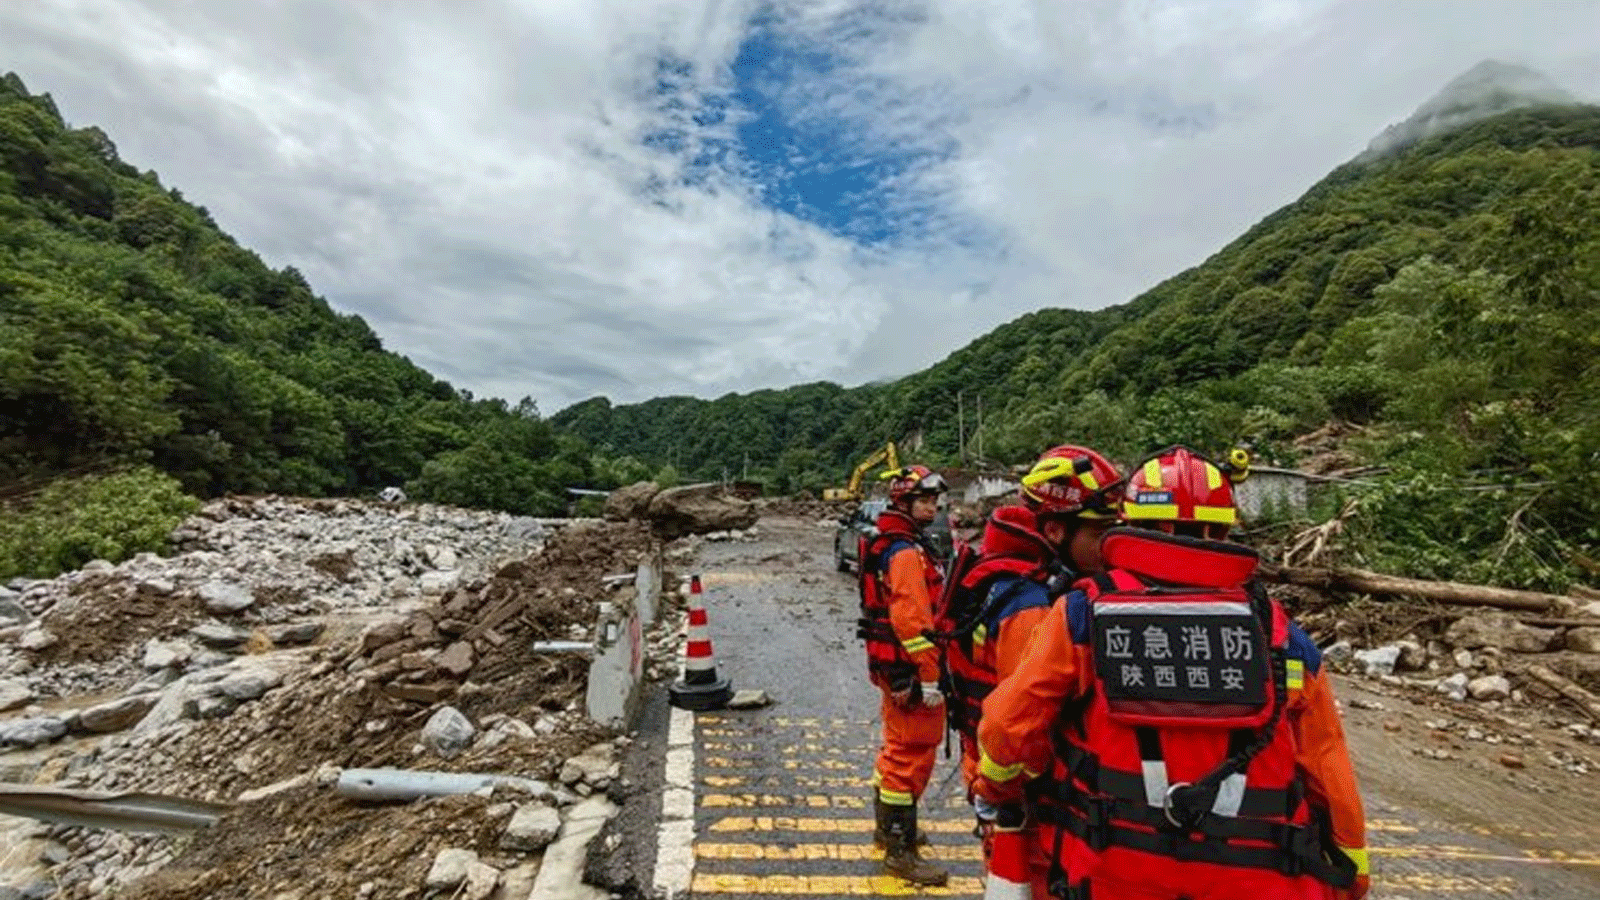 فرق الإنقاذ تعمل في قرية جبلية بالقرب من مدينة شيان شمال غرب الصين، حيث جرفت الفيضانات والانهيارات الطينية المنازل وألحقت أضرارًا بالطرق والجسور ومنشآت الطاقة(يونهاب)